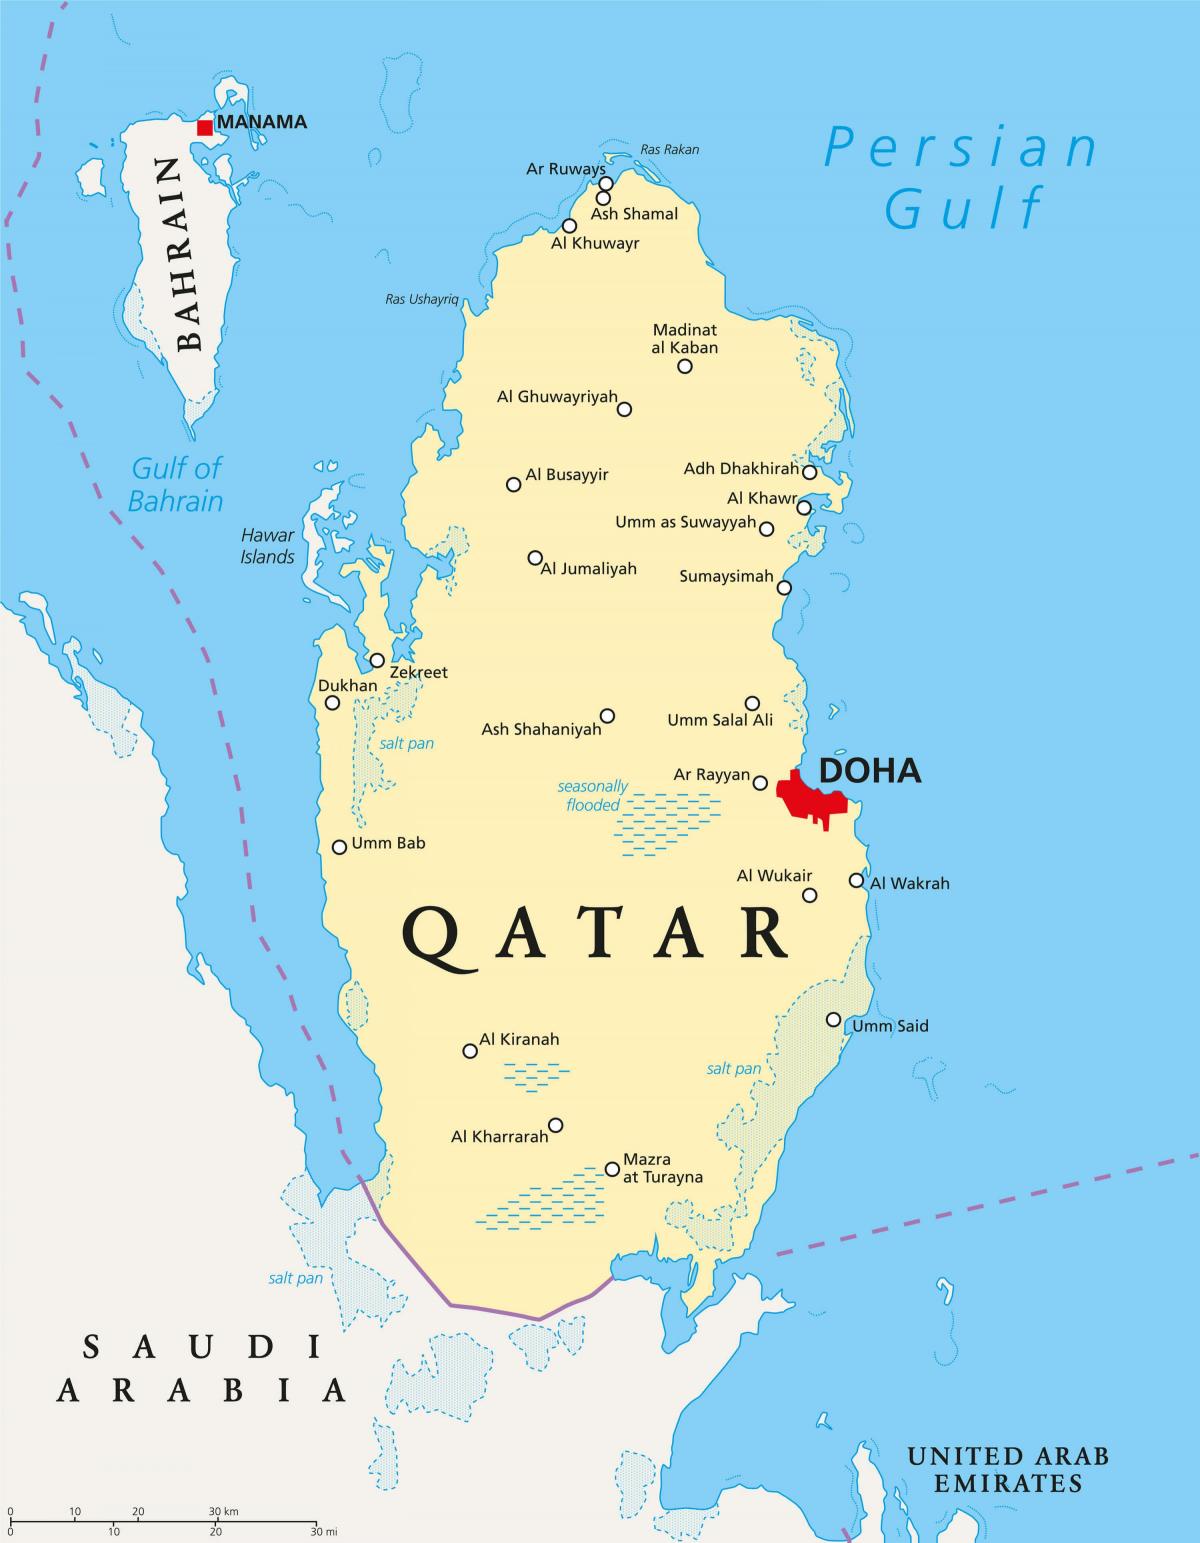 कतर के नक्शे के साथ शहरों